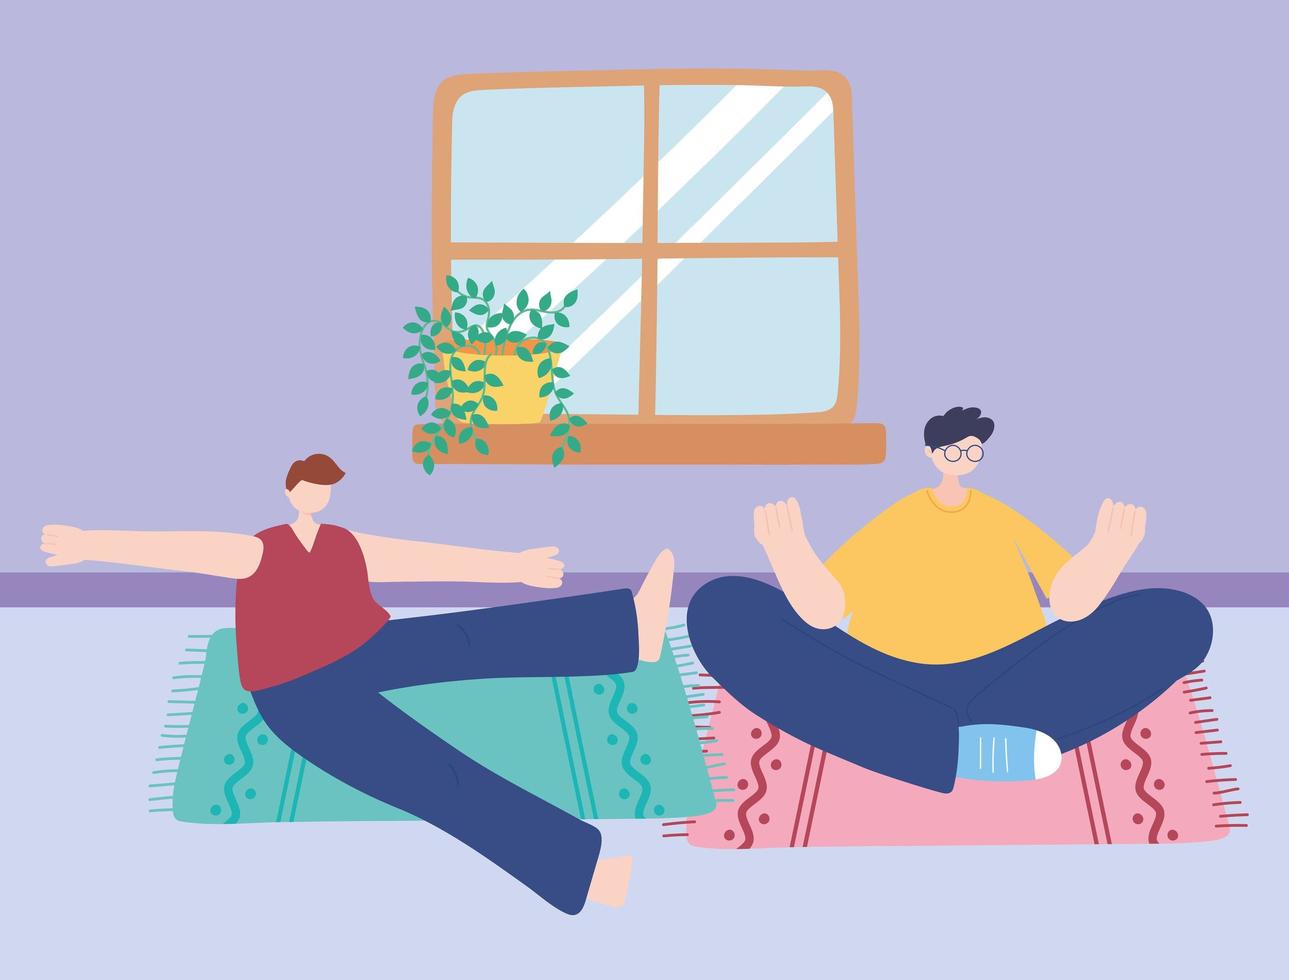 quedarse en casa, meditación de hombres posan yoga en la habitación, autoaislamiento, actividades en cuarentena por coronavirus vector